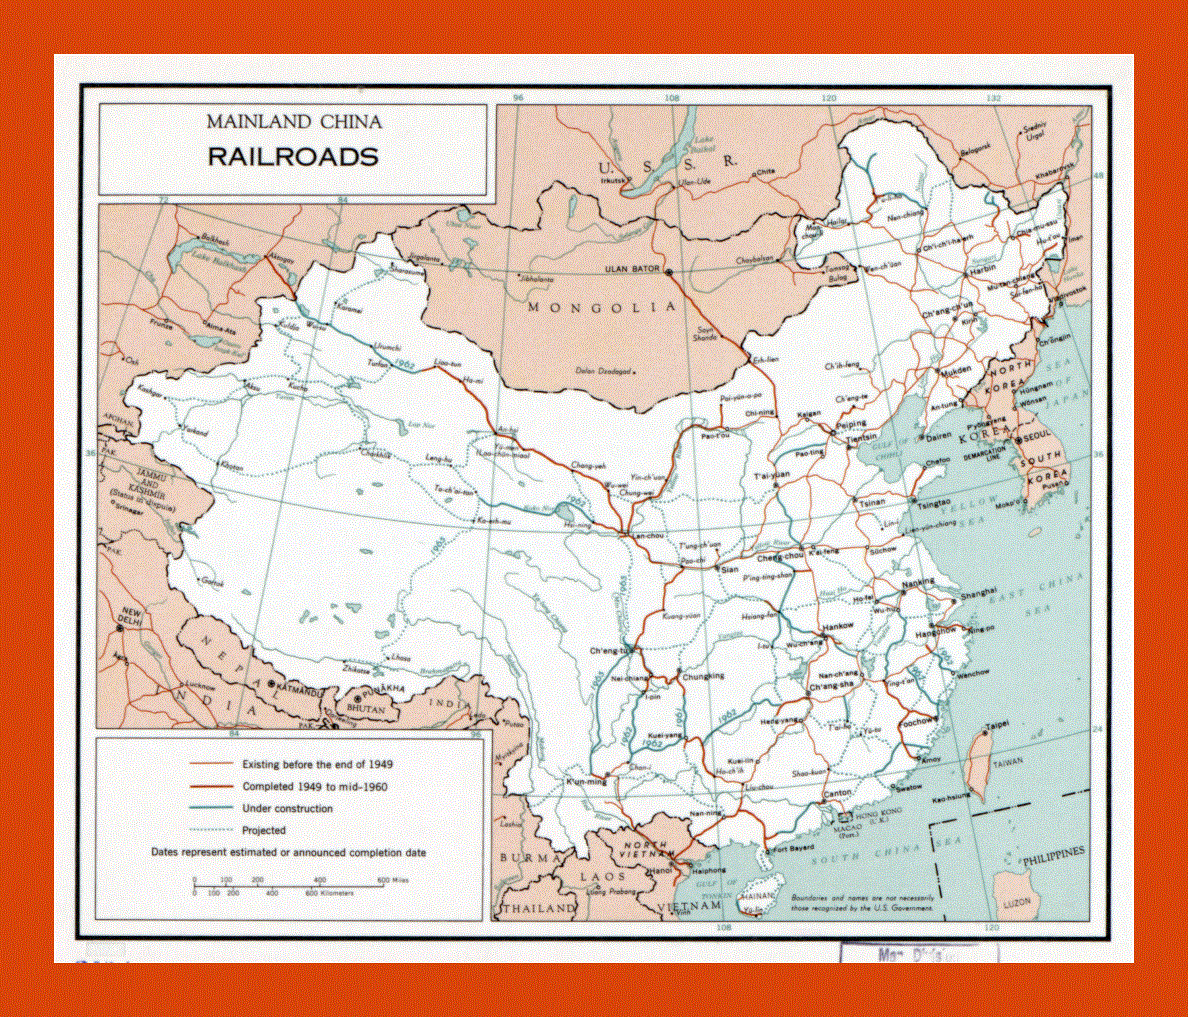 Railroads map of mainland China - 1960